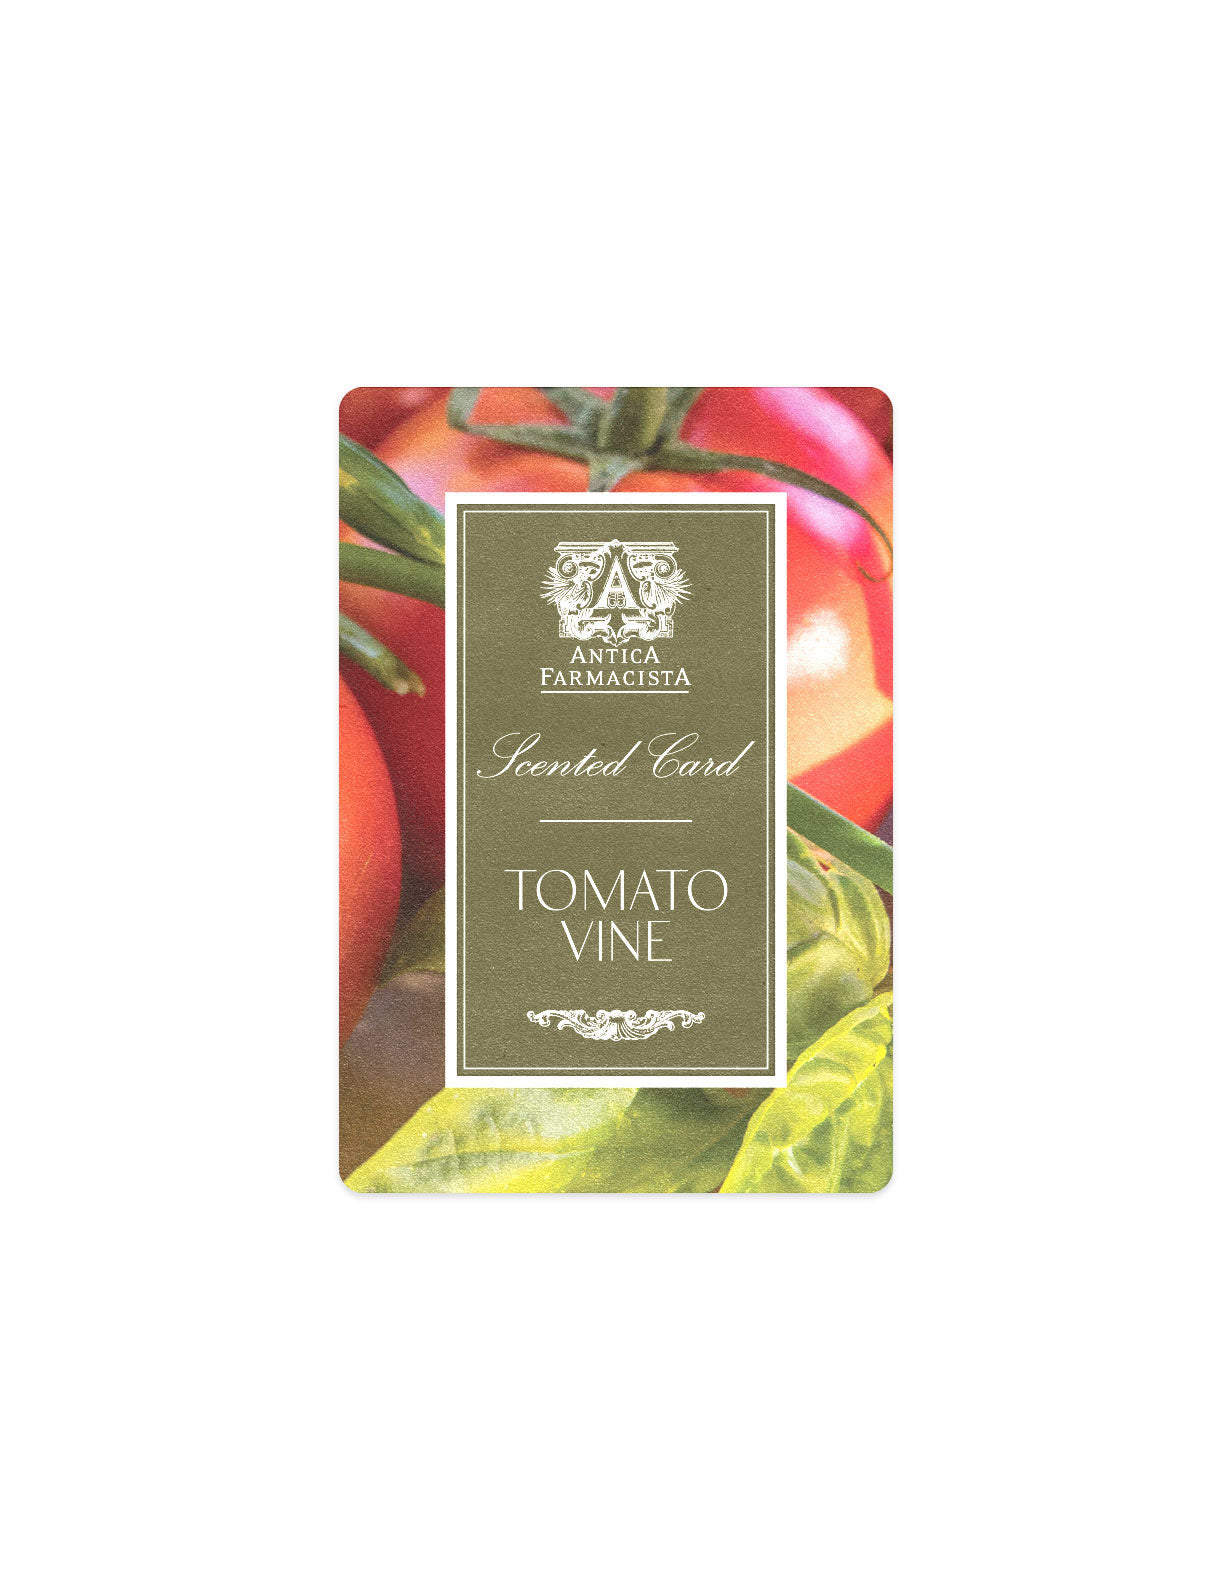 GWP - Scented Card - Tomato Vine